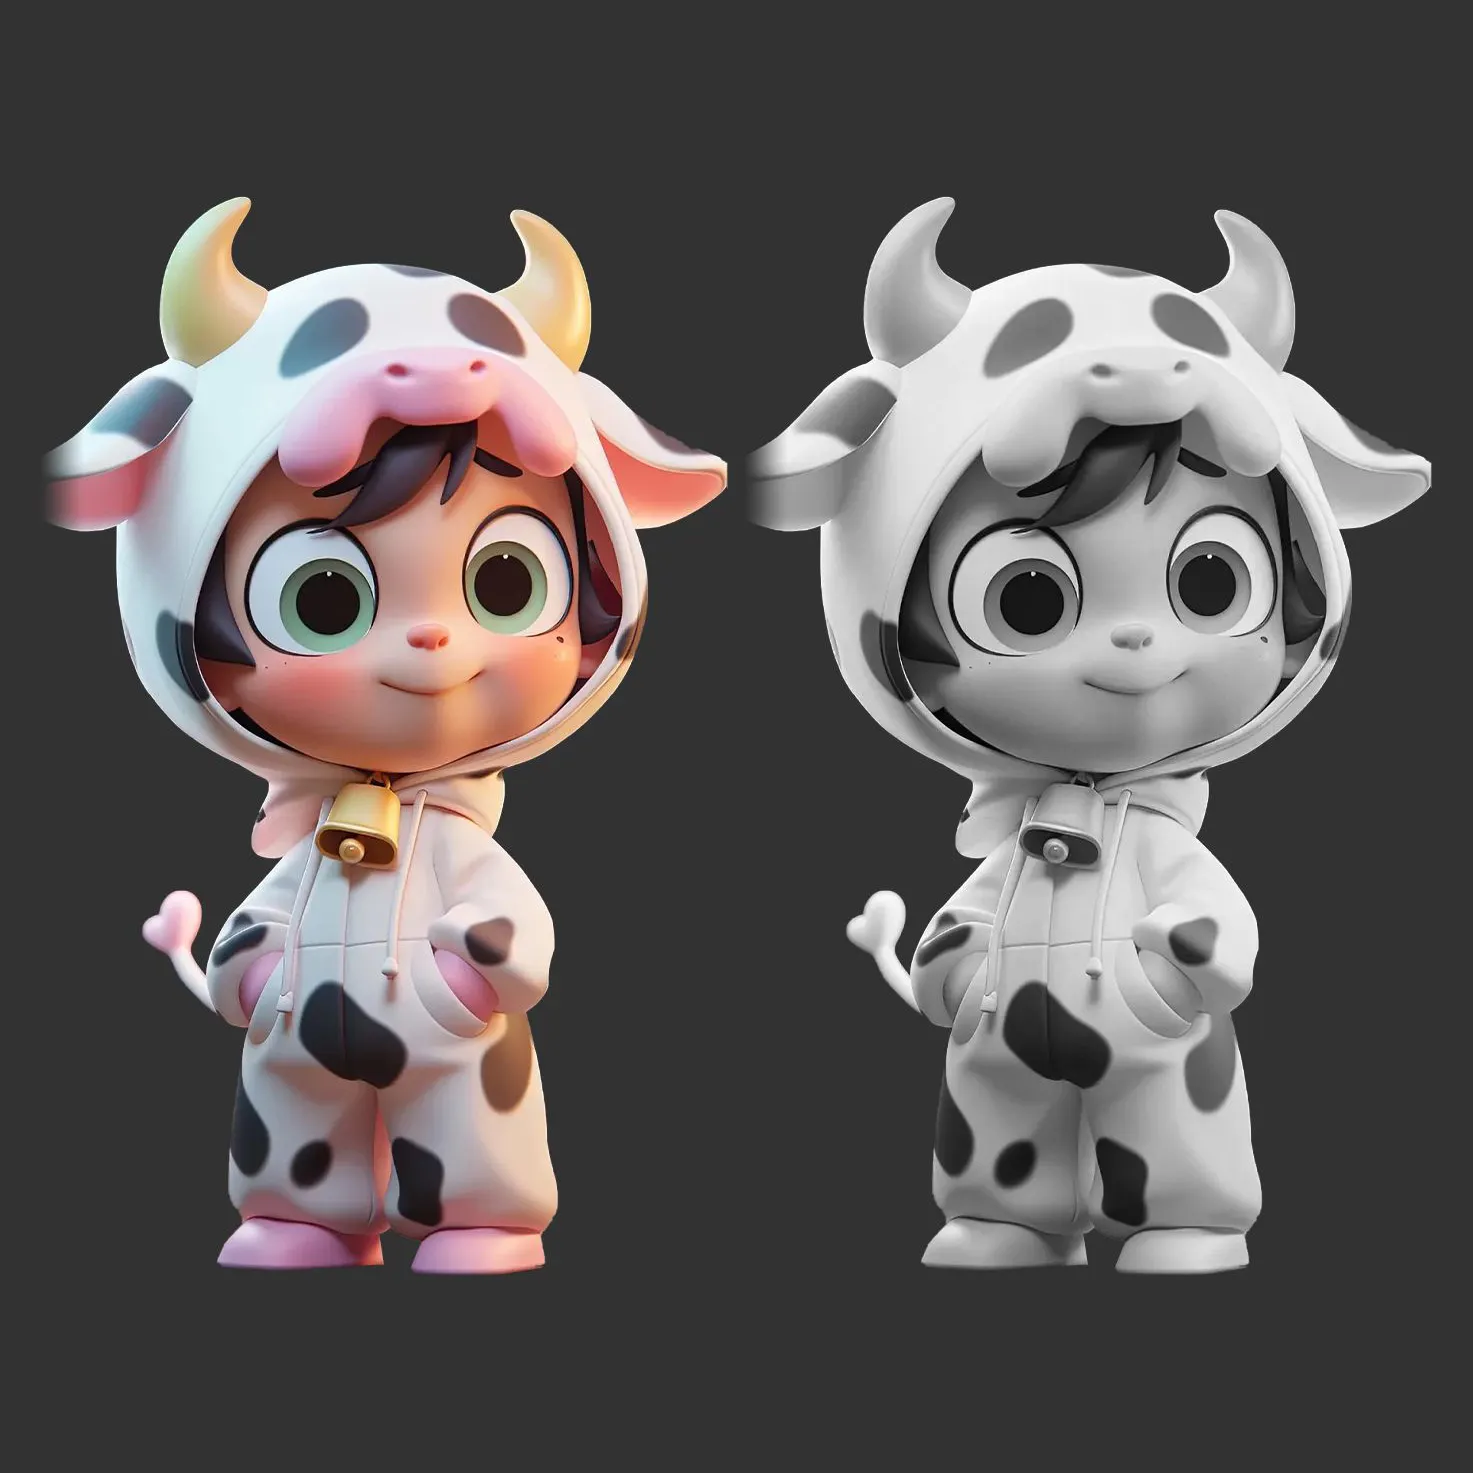 cartoon toy cute miniature cow statue 3D sculpture anime figure